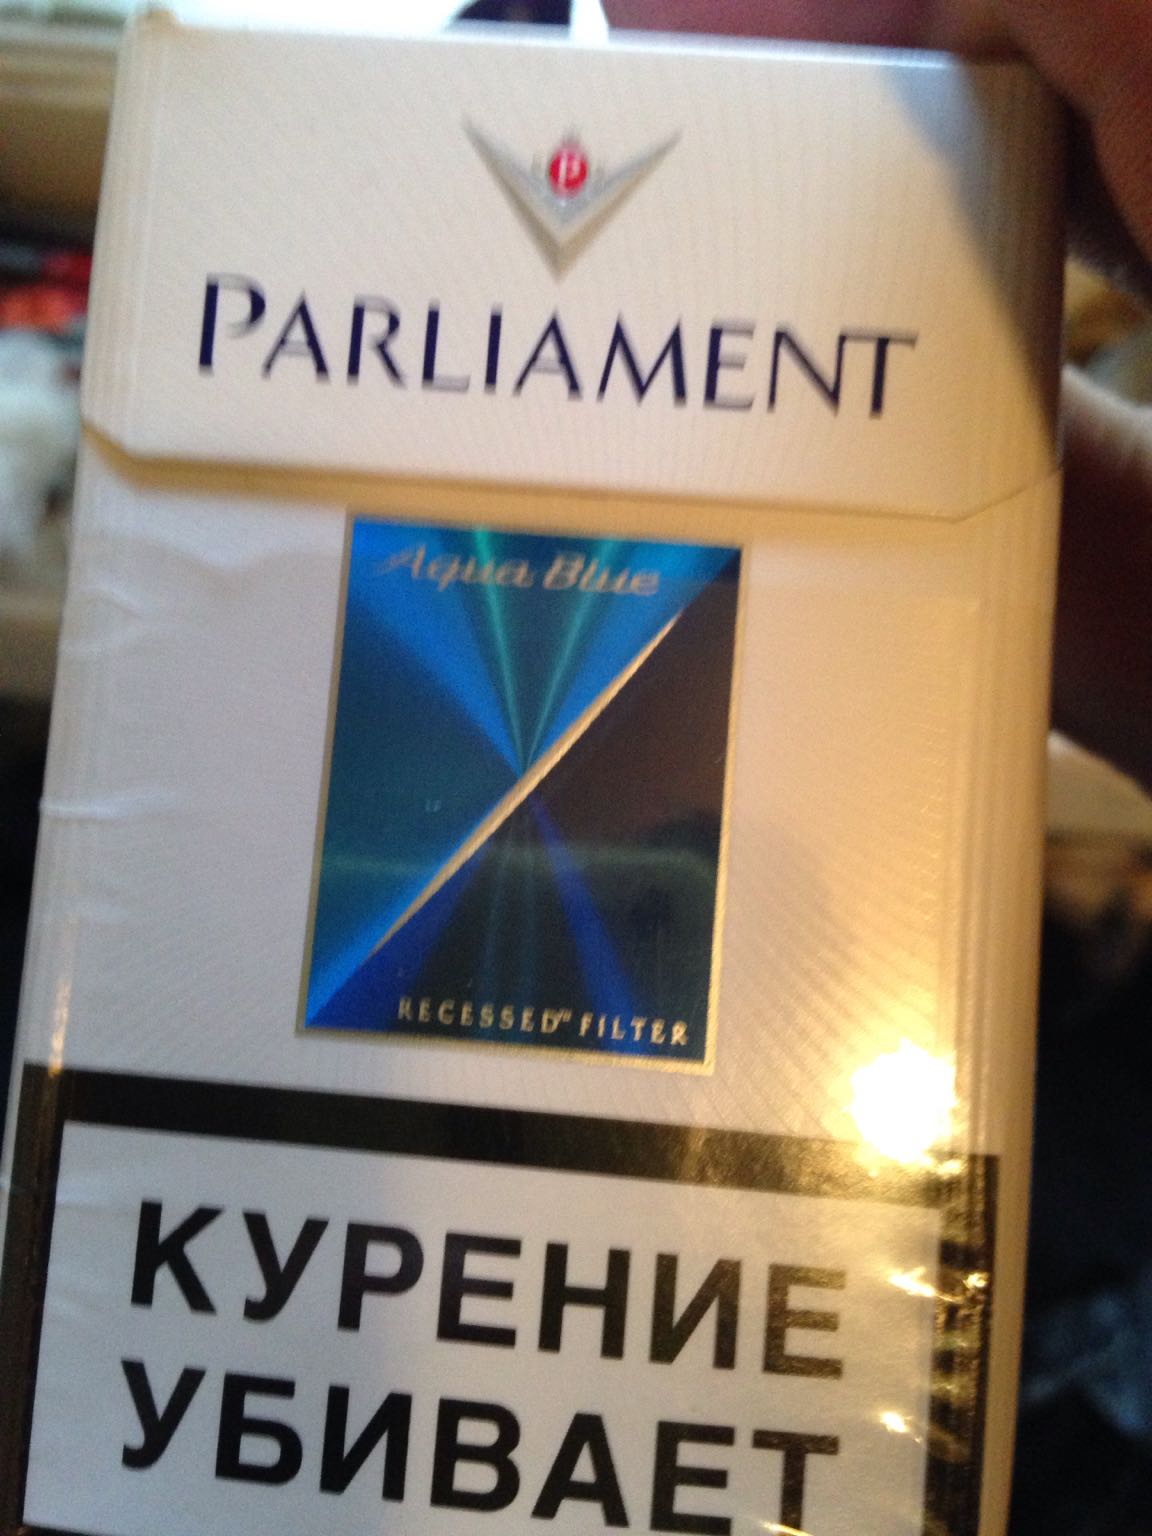 Белорусский парламент сигареты